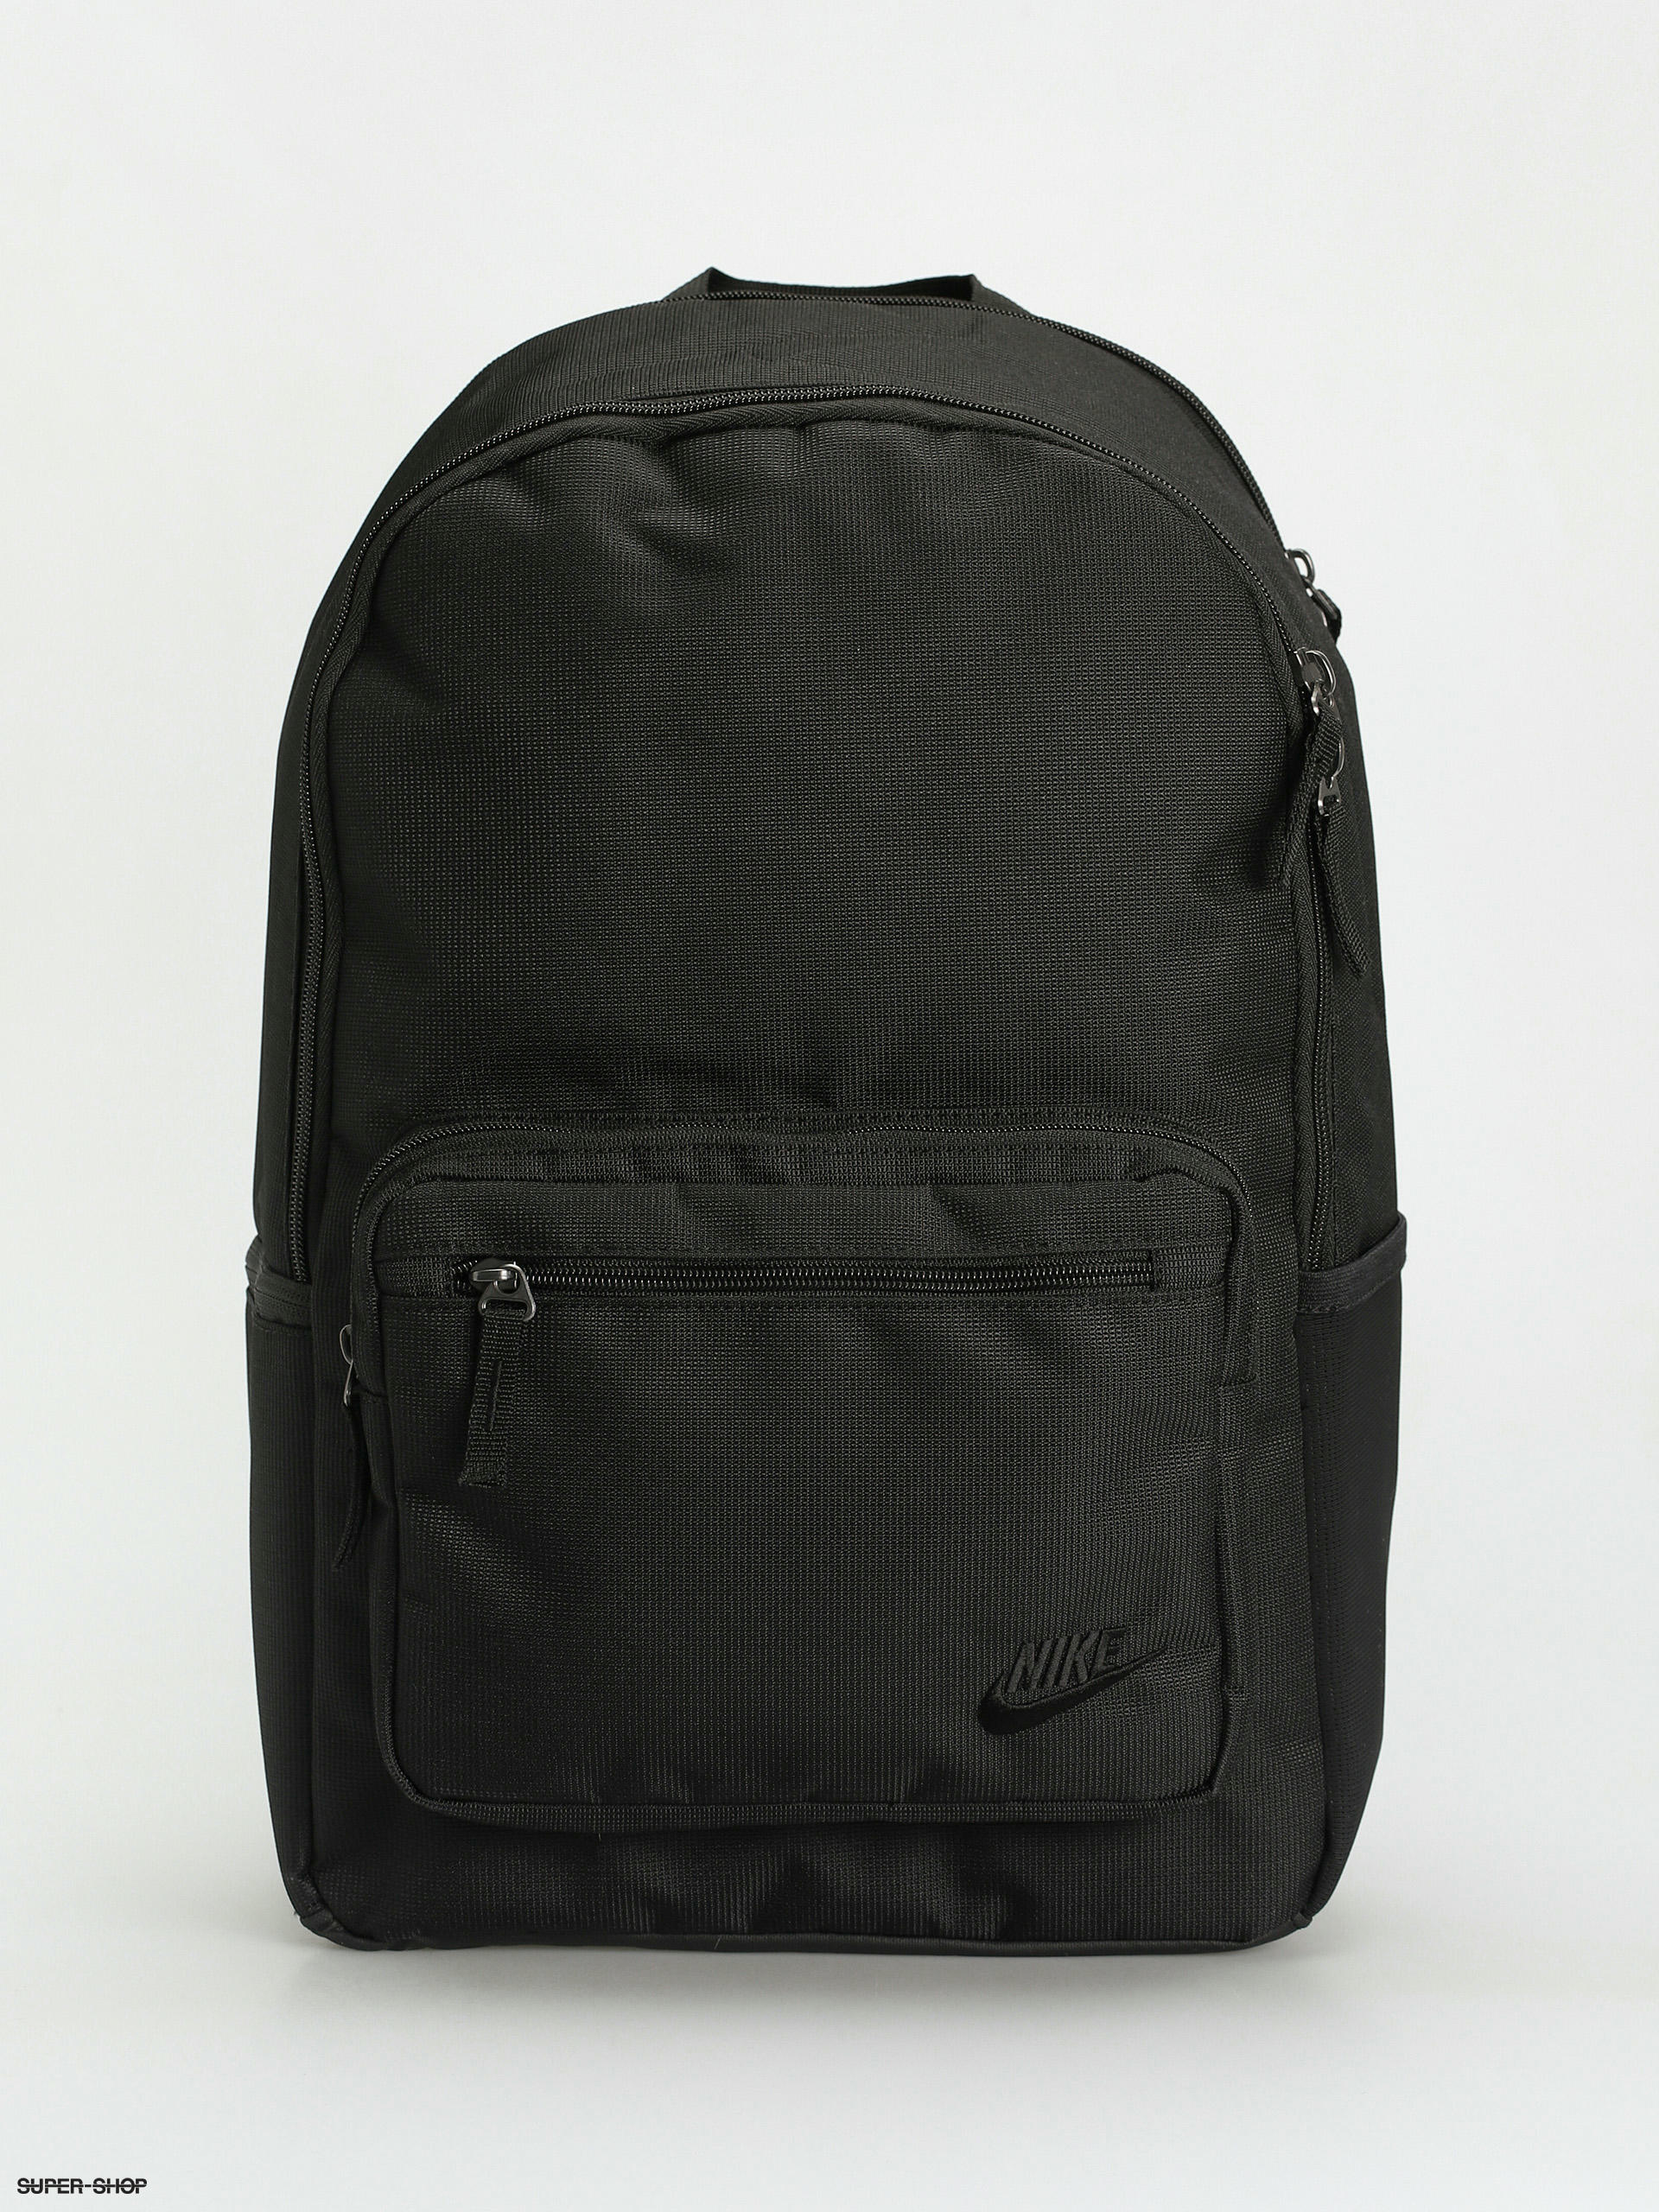 Nike SB RPM Tropical Skateboard Backpack - Black/Black/White